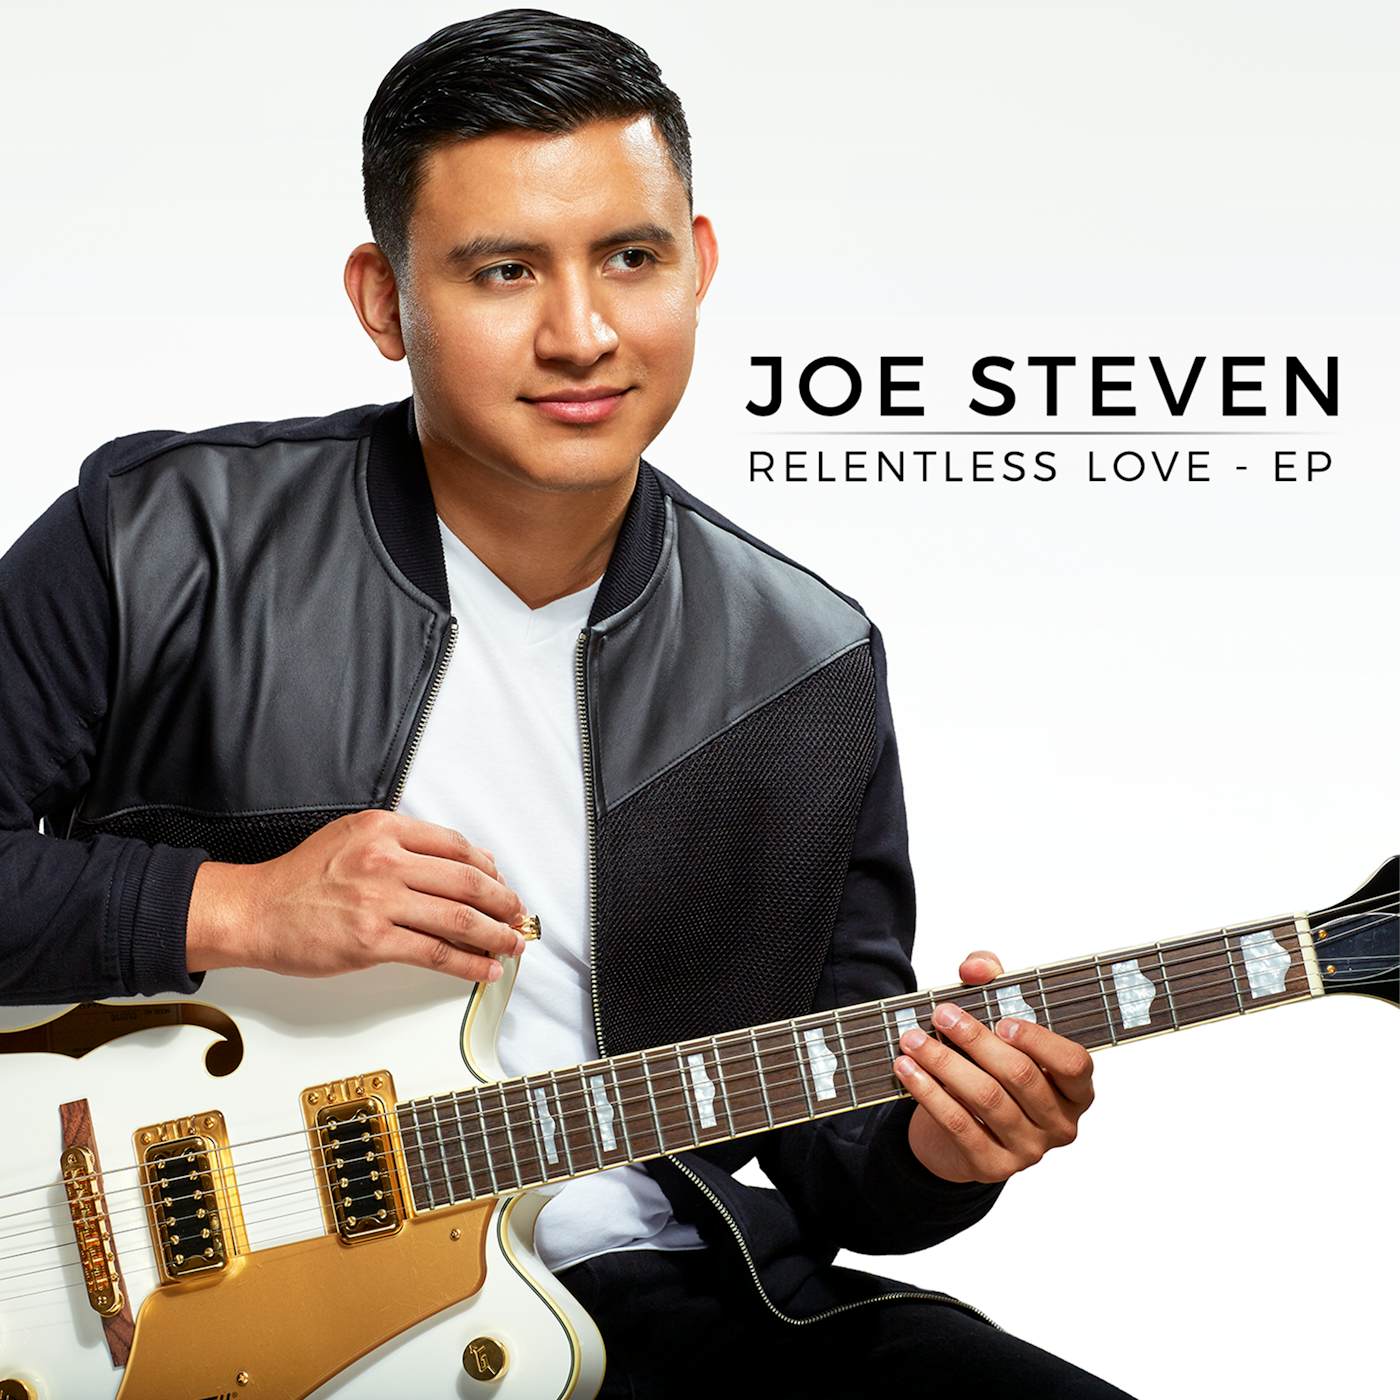 Joe Steven Relentless Love - EP Album (Physical CD)